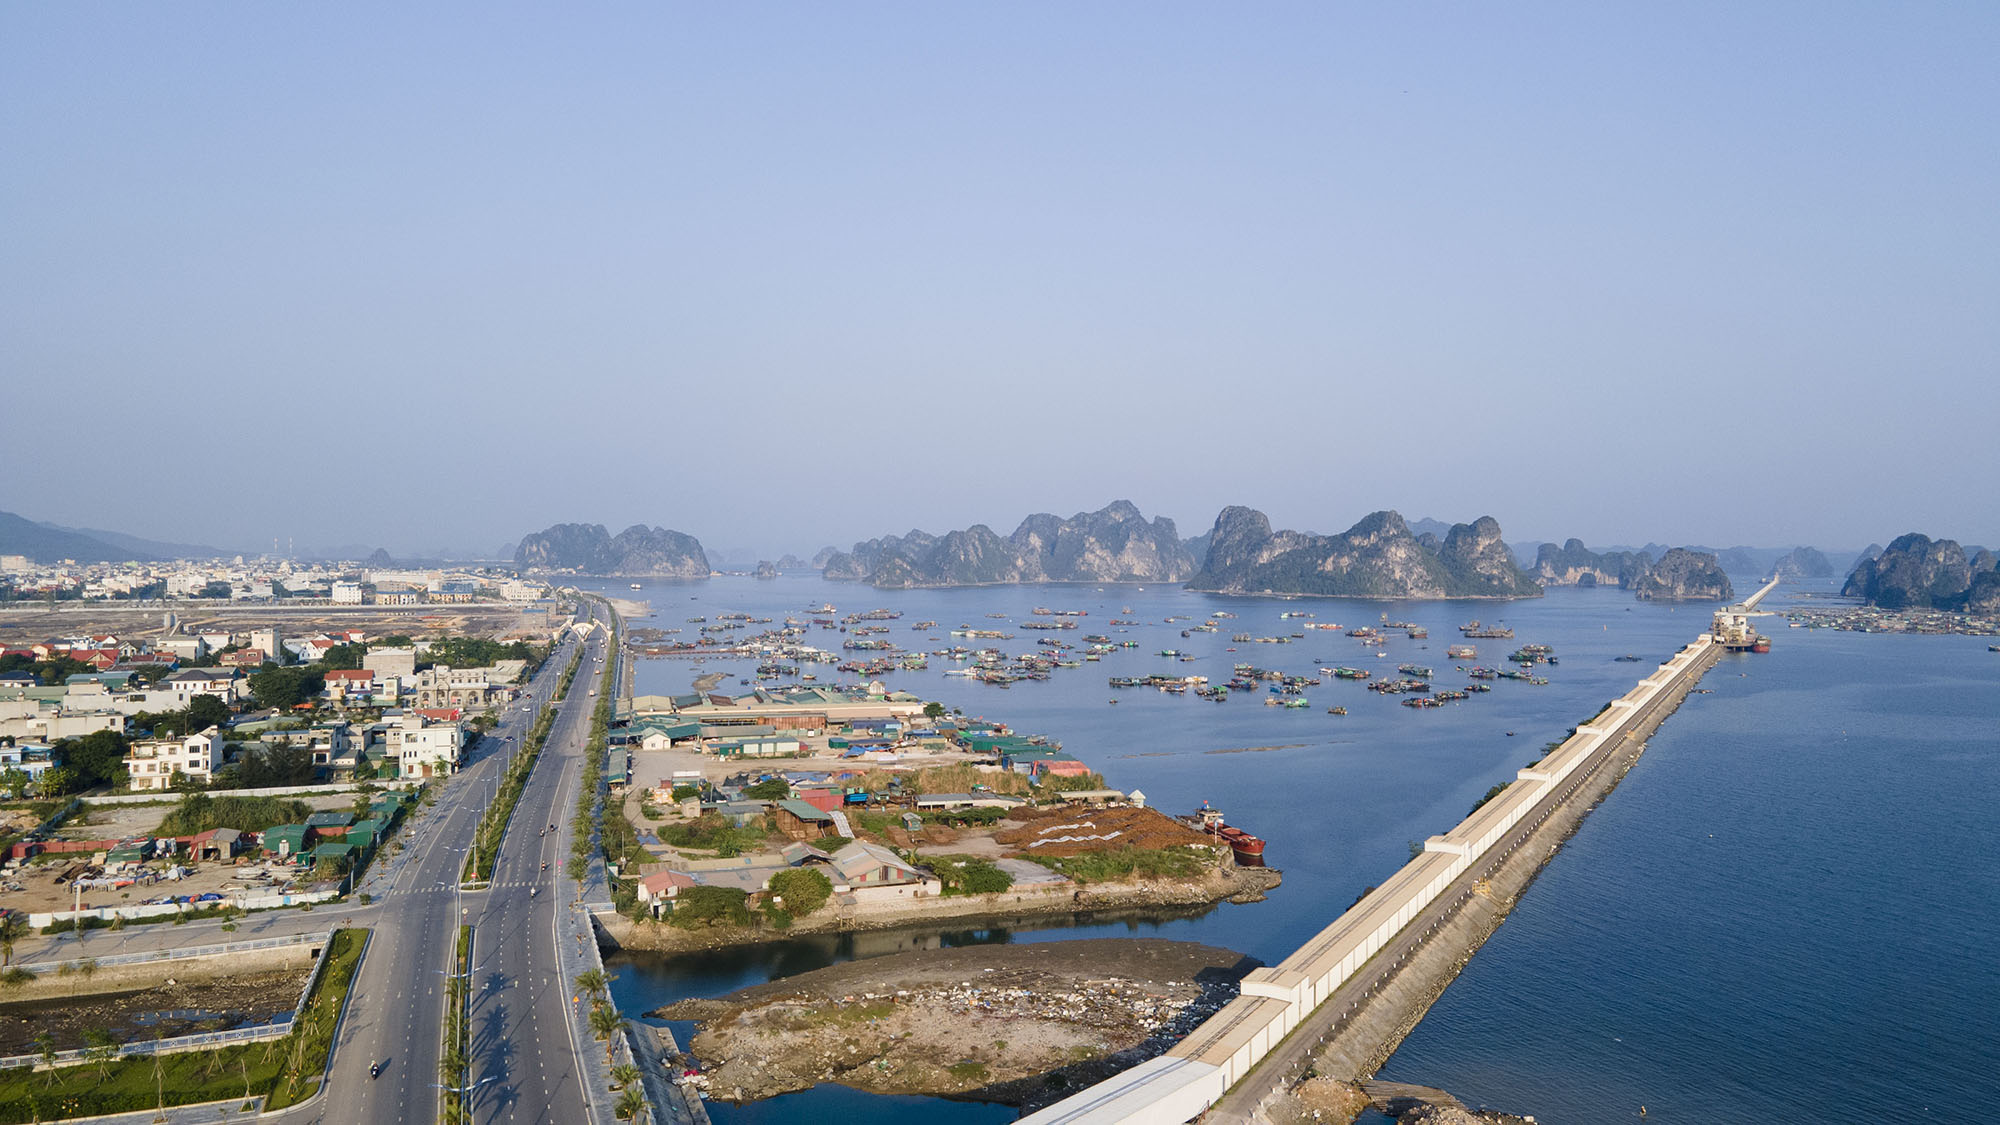 Một vòng cung đường bao biển đẹp bậc nhất Việt Nam chạy qua 2 thành phố - 3